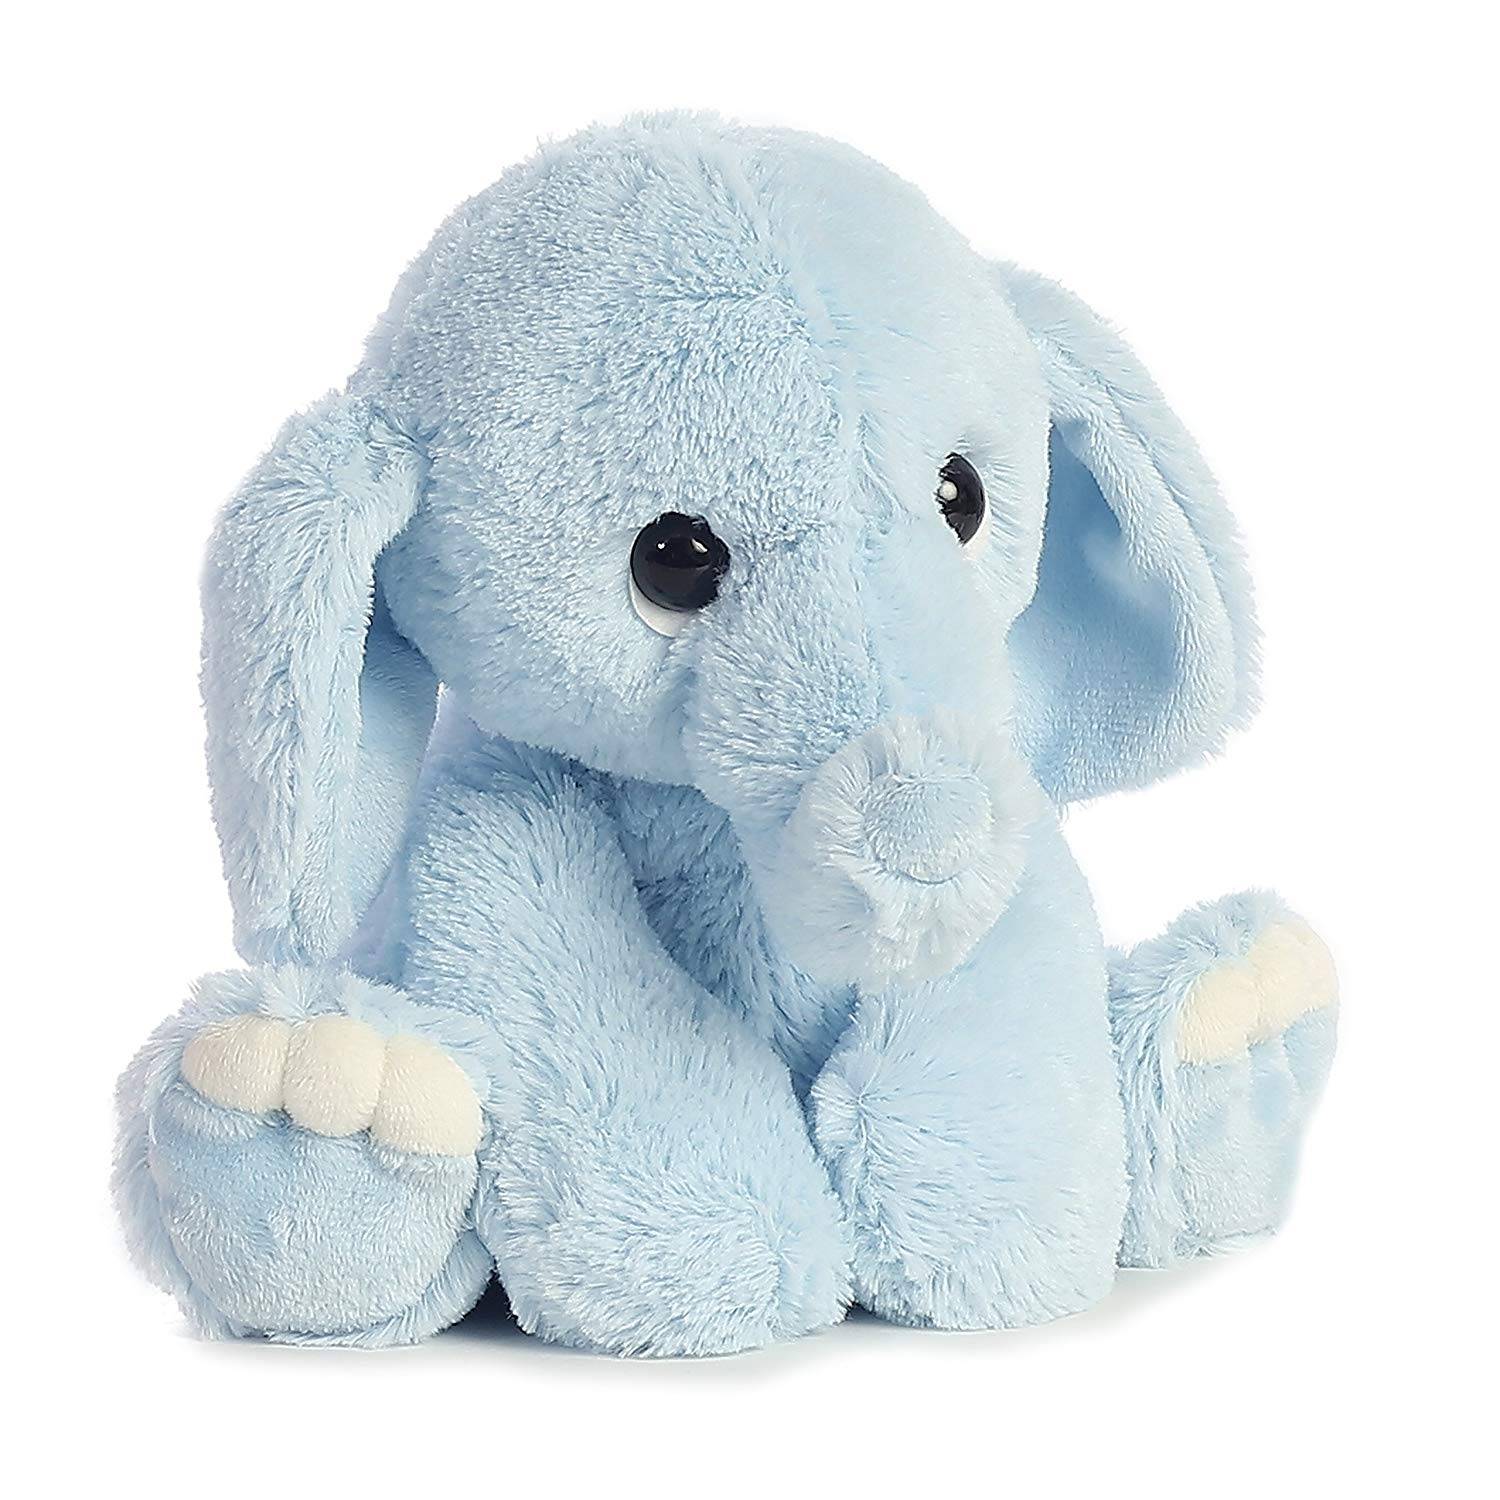 bajo precio rosa gris color azul de peluche juguetes de peluche de elefante baratas juguete de peluche para los niños